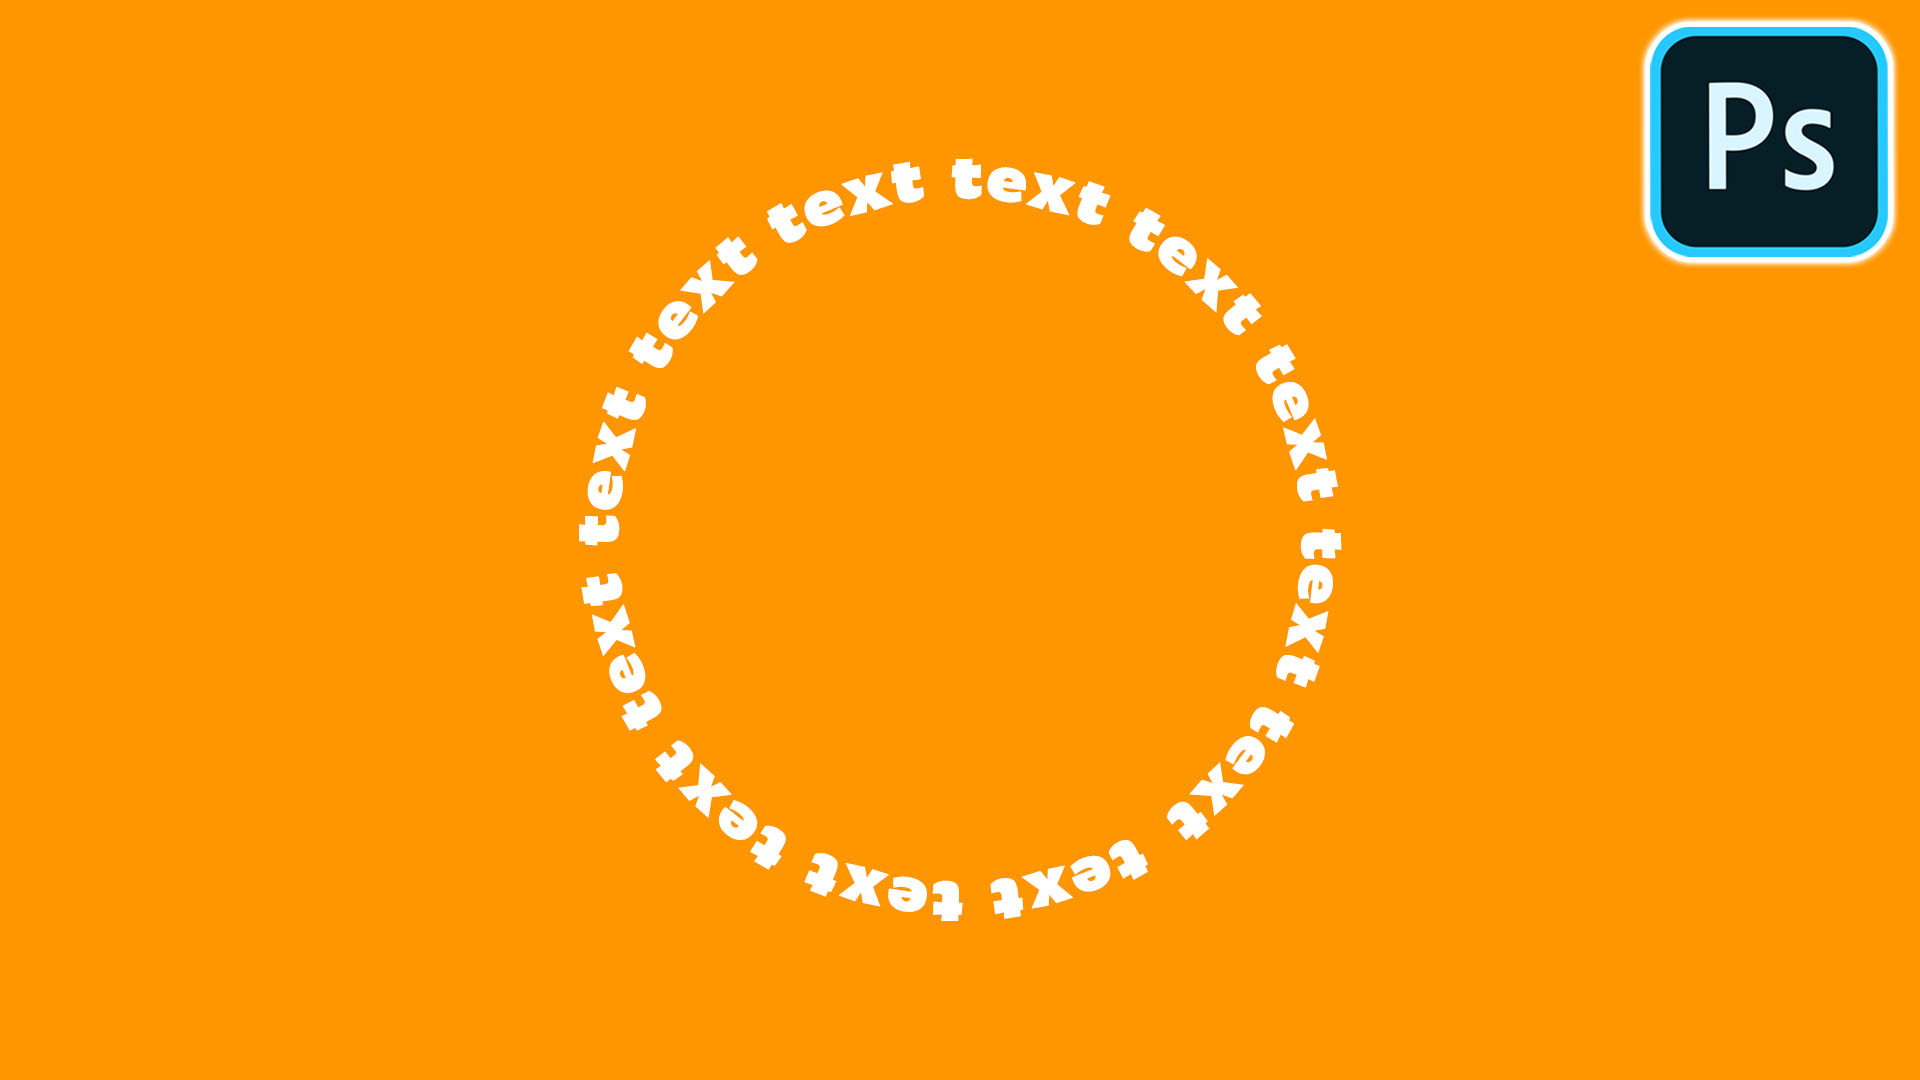 Photoshop Tutorial: Wrap Text Around a Circle